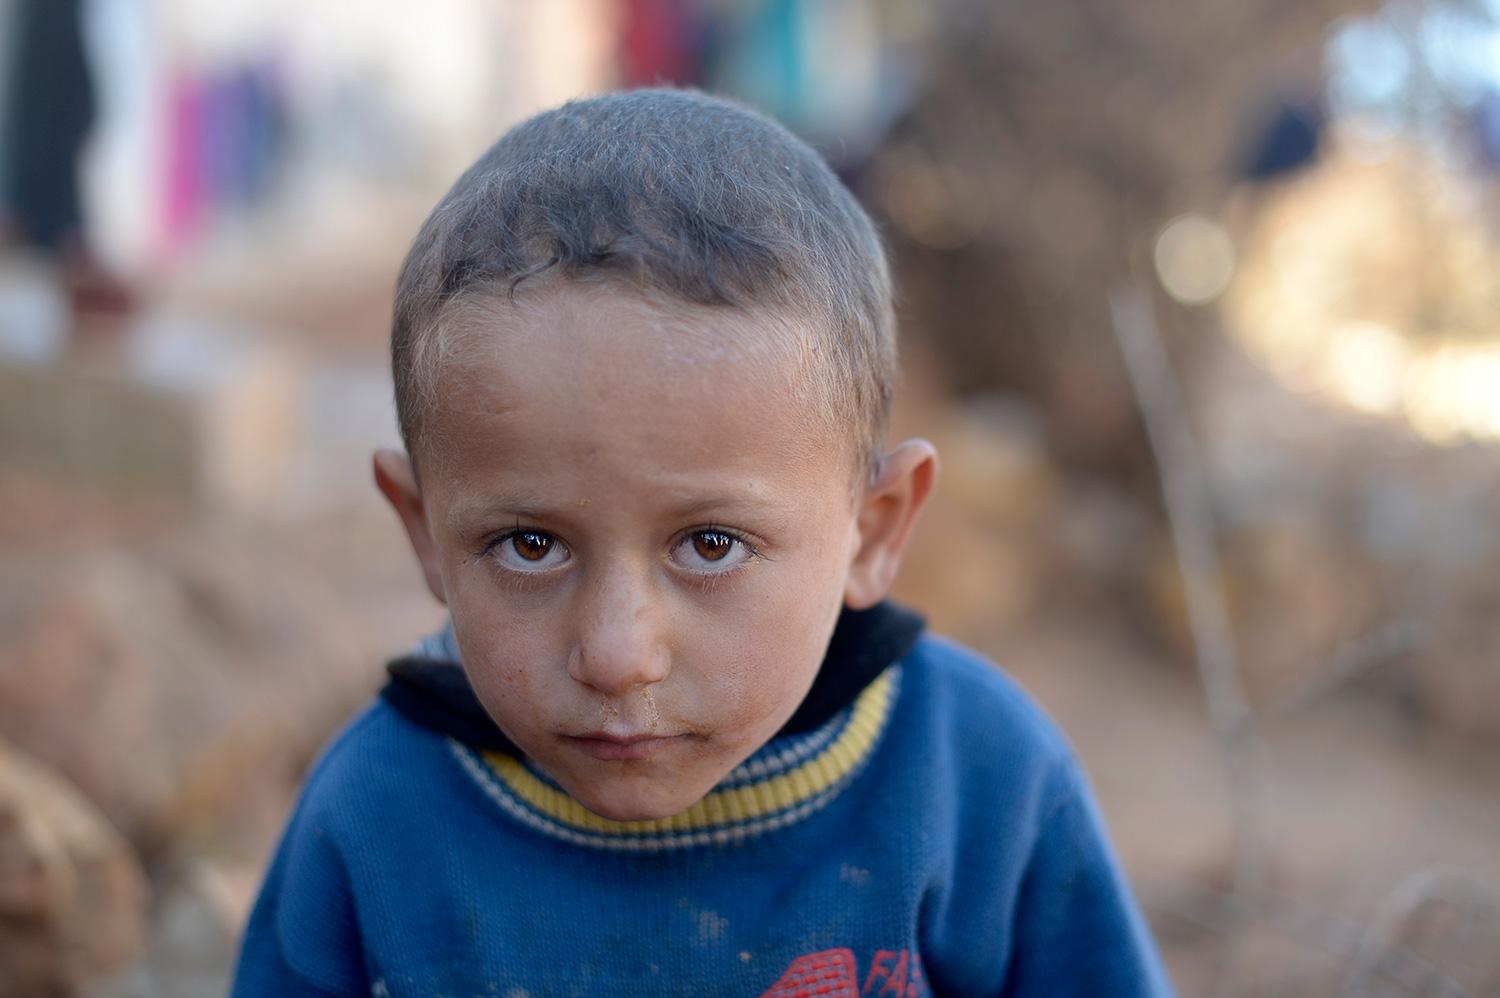 Vad drömmer du om? Ahmed, 3: Jag vill hem till Syrien med min mamma och pappa.